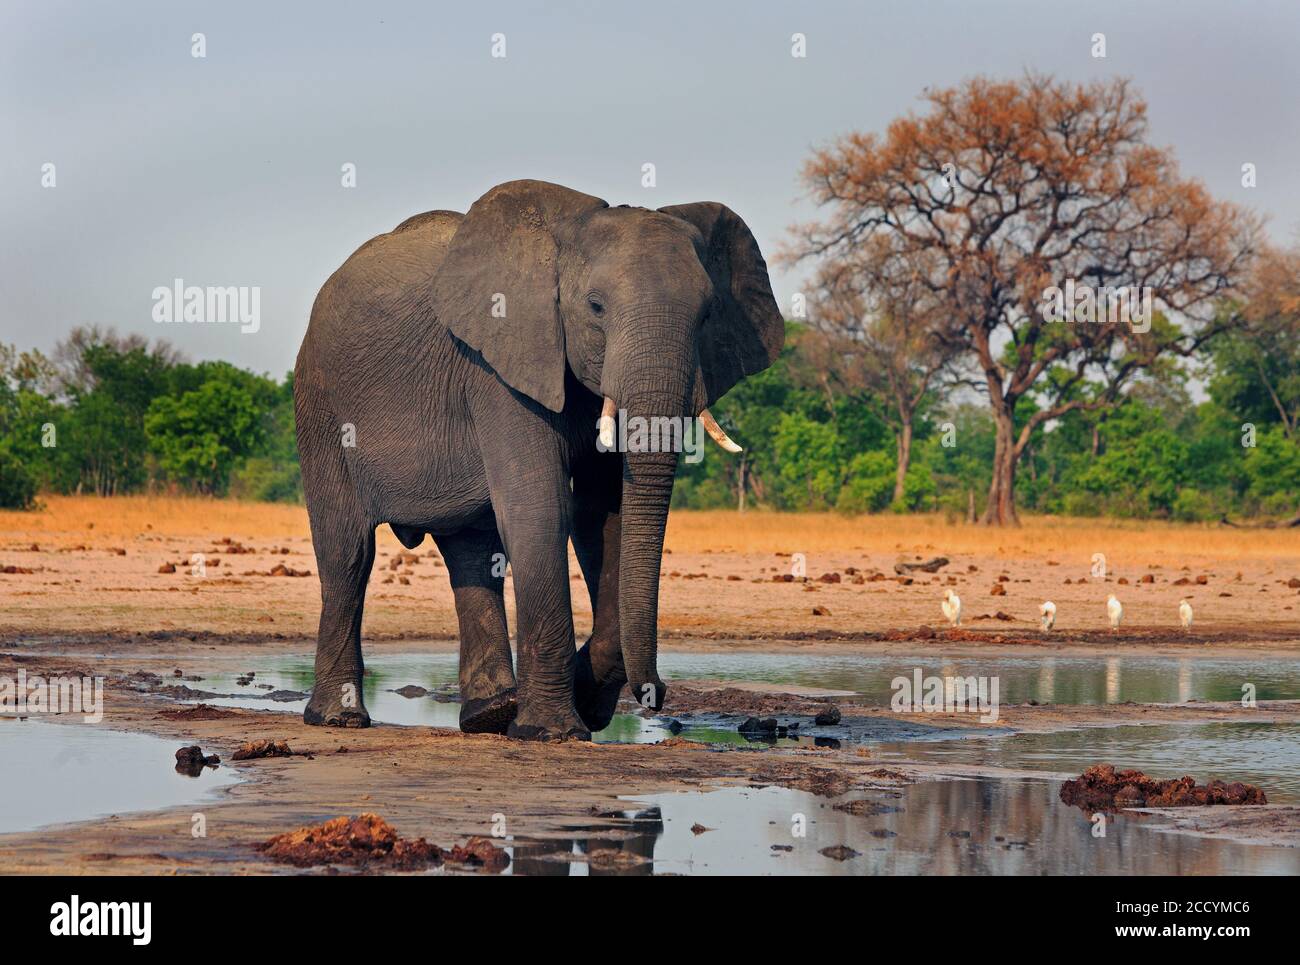 Éléphant d'Afrique debout à un trou d'eau avec la végétation africaine en arrière-plan. Makololo, parc national de Hwange, Zimbabwe, Afrique australe Banque D'Images